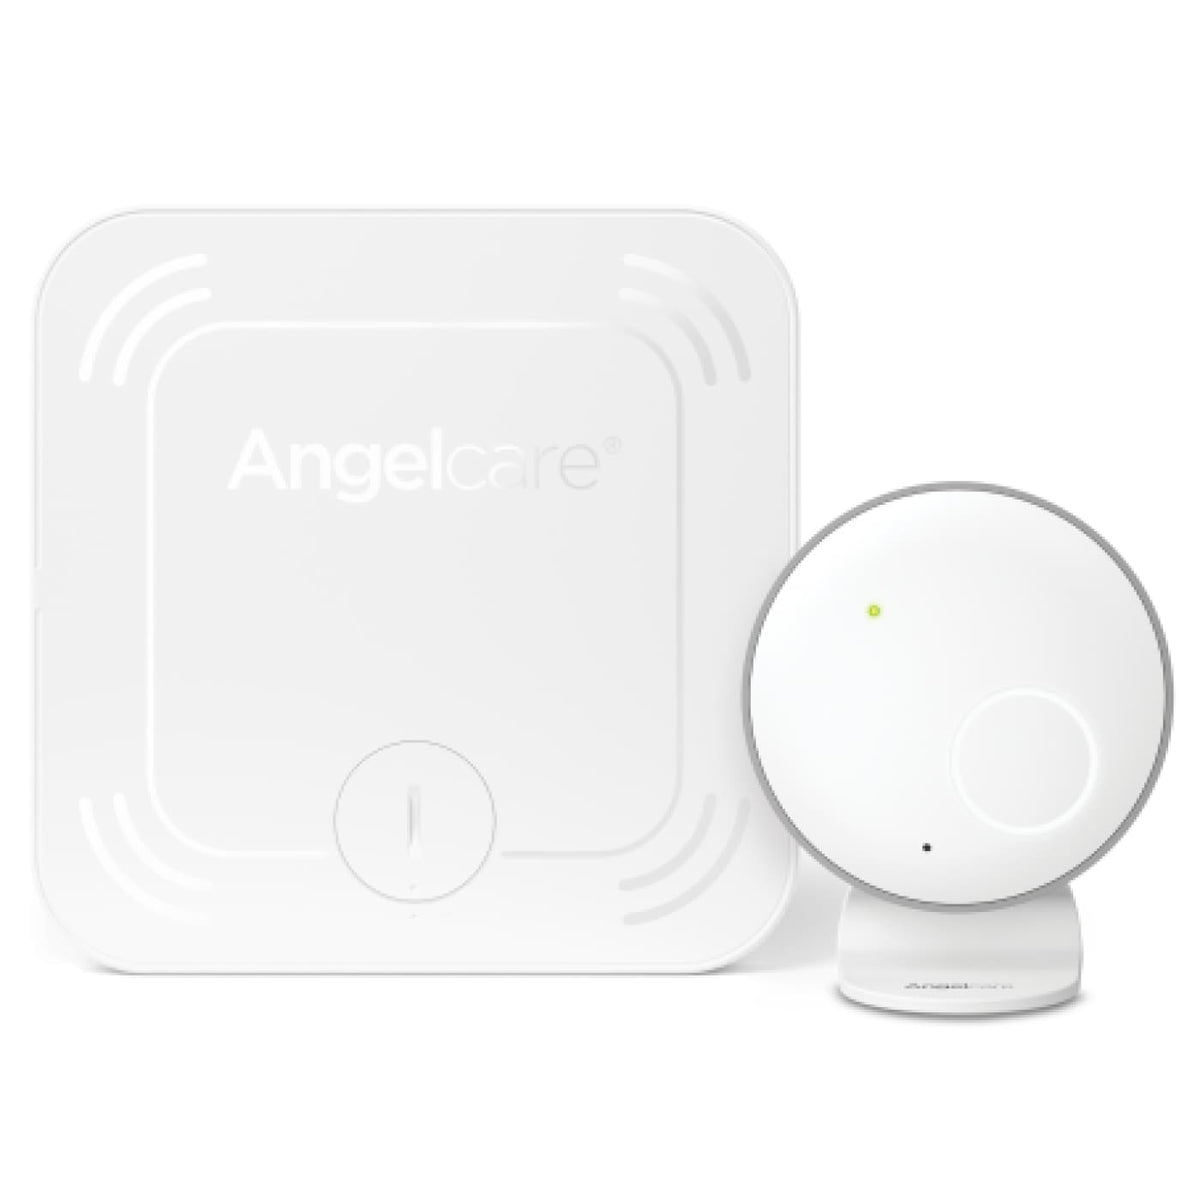 Angelcare Movement Monitor SensAsure Sensor Pad - HEALTH &amp; HOME SAFETY - BABY MONITORS